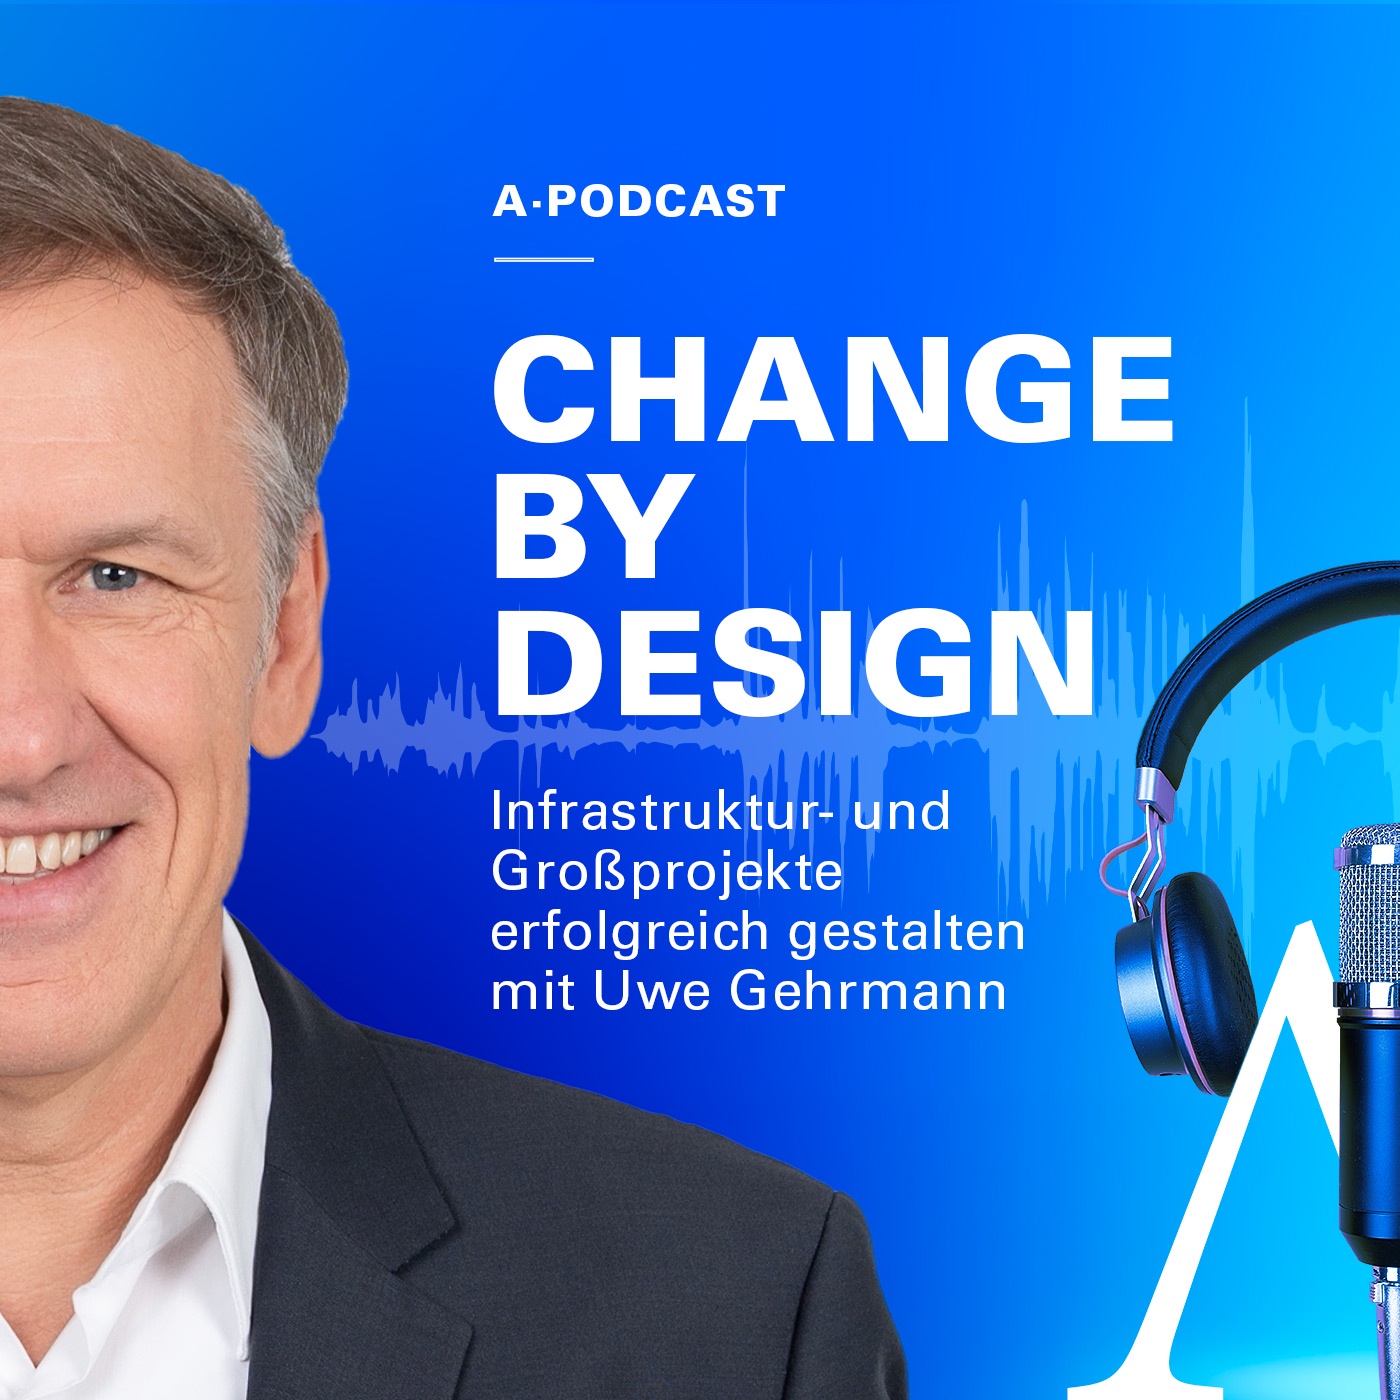 Change by Design - Resolution Board mit Prof. Dr. Heinrich Arnold und Thomas Gläßer